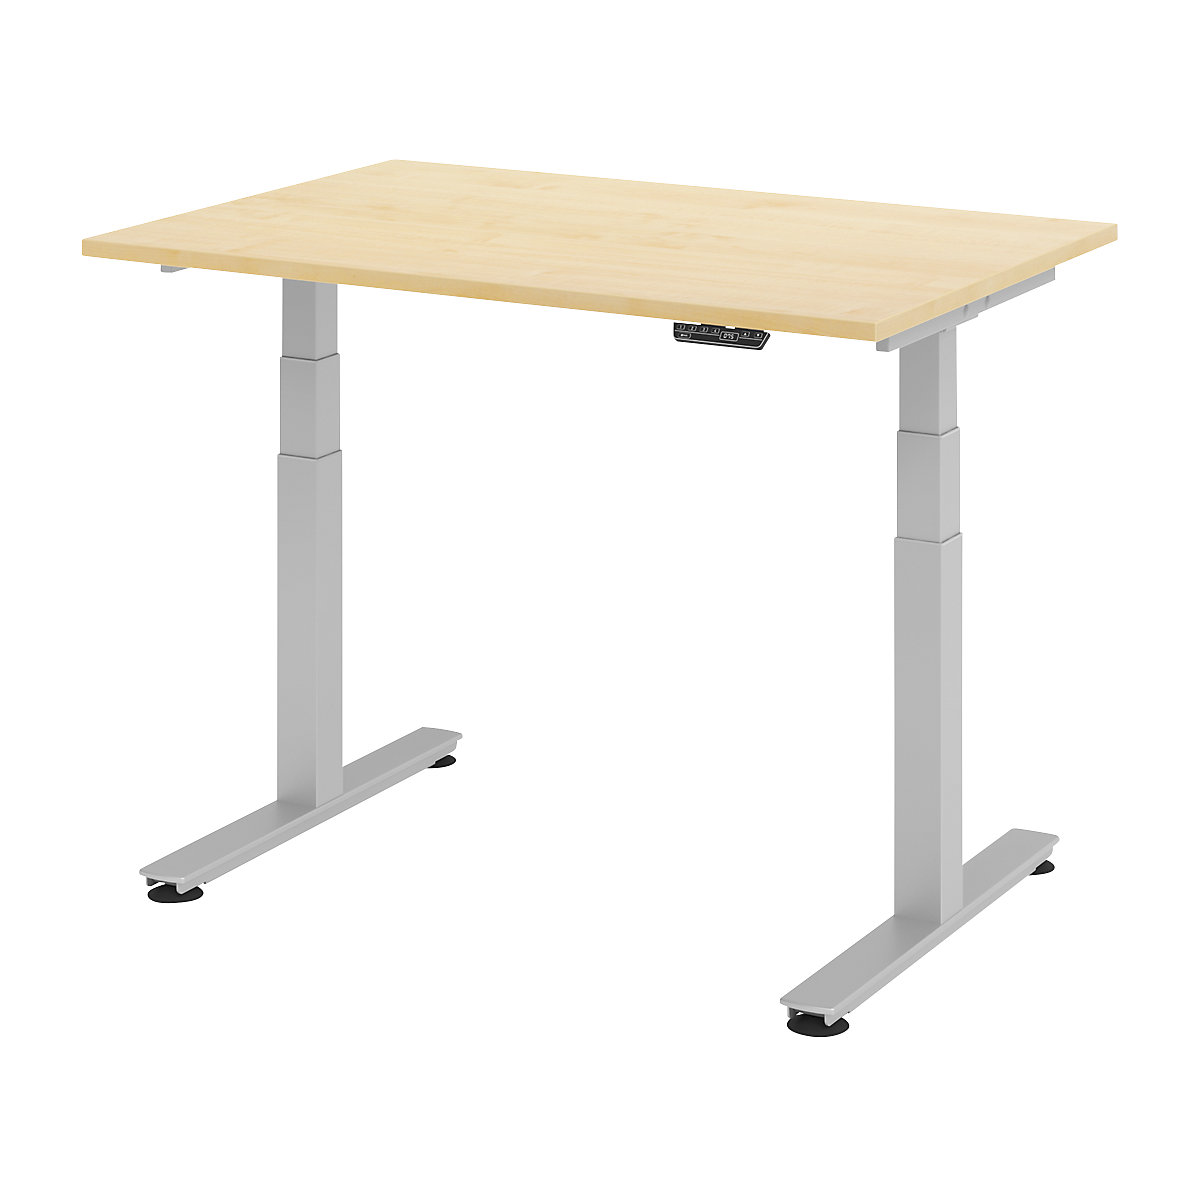 Psací stůl pro práci vestoje, s elektrickým přestavováním výšky UPLINER-2.0, podstavec s nohami ve tvaru T, šířka 1200 mm, javorový dekor-9